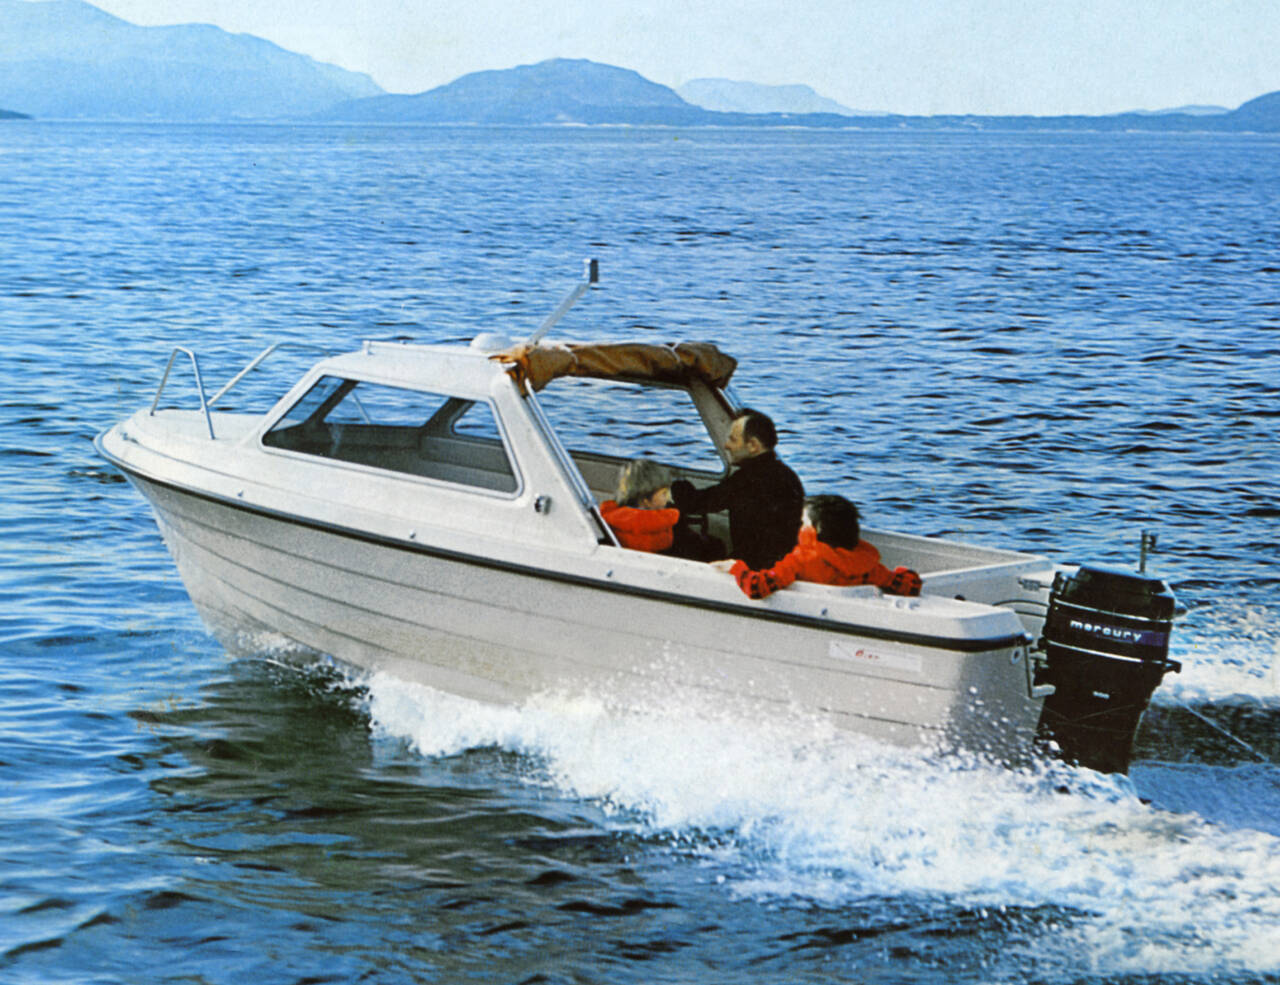 Øien 17 HT Fjordingen - en klassisk norsk hardtopbåt for turer og fiske. Brosjyrebilde fra ca. 1980